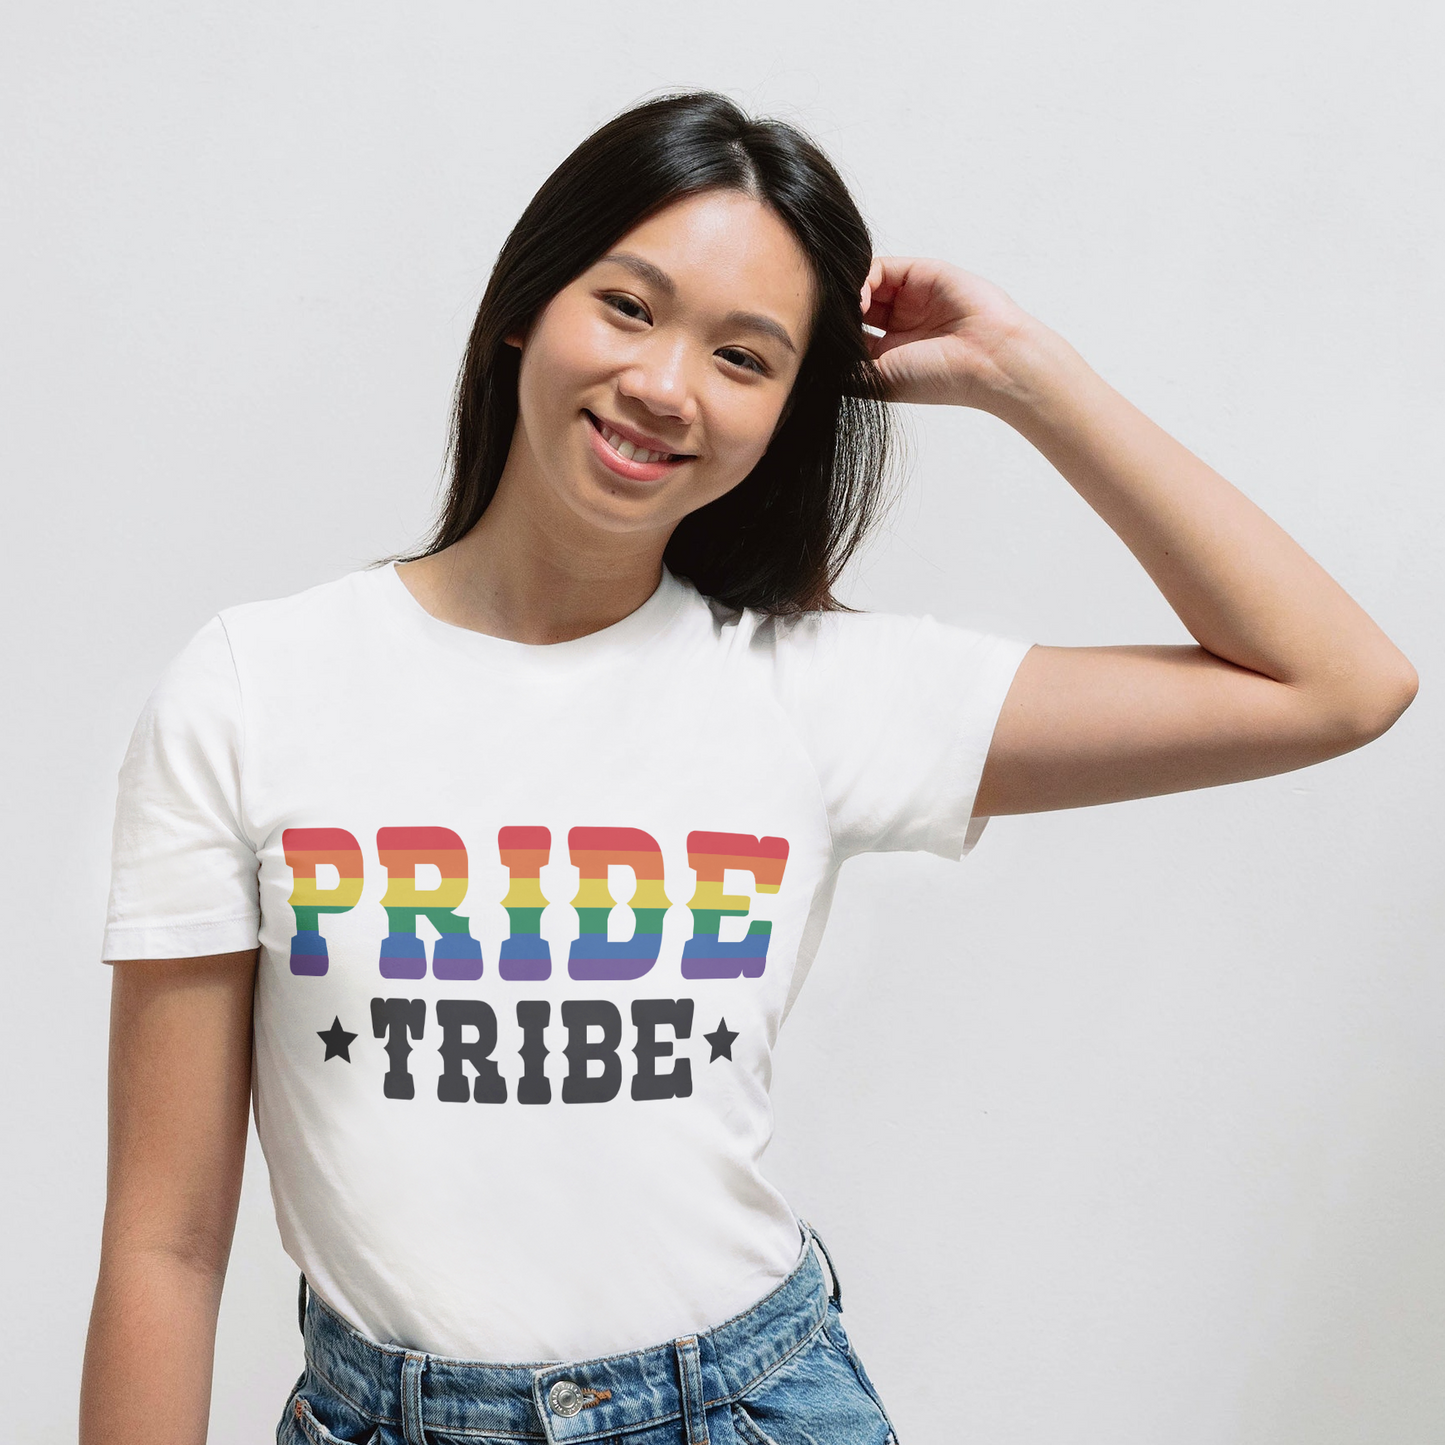 Classic-Pride Tribe